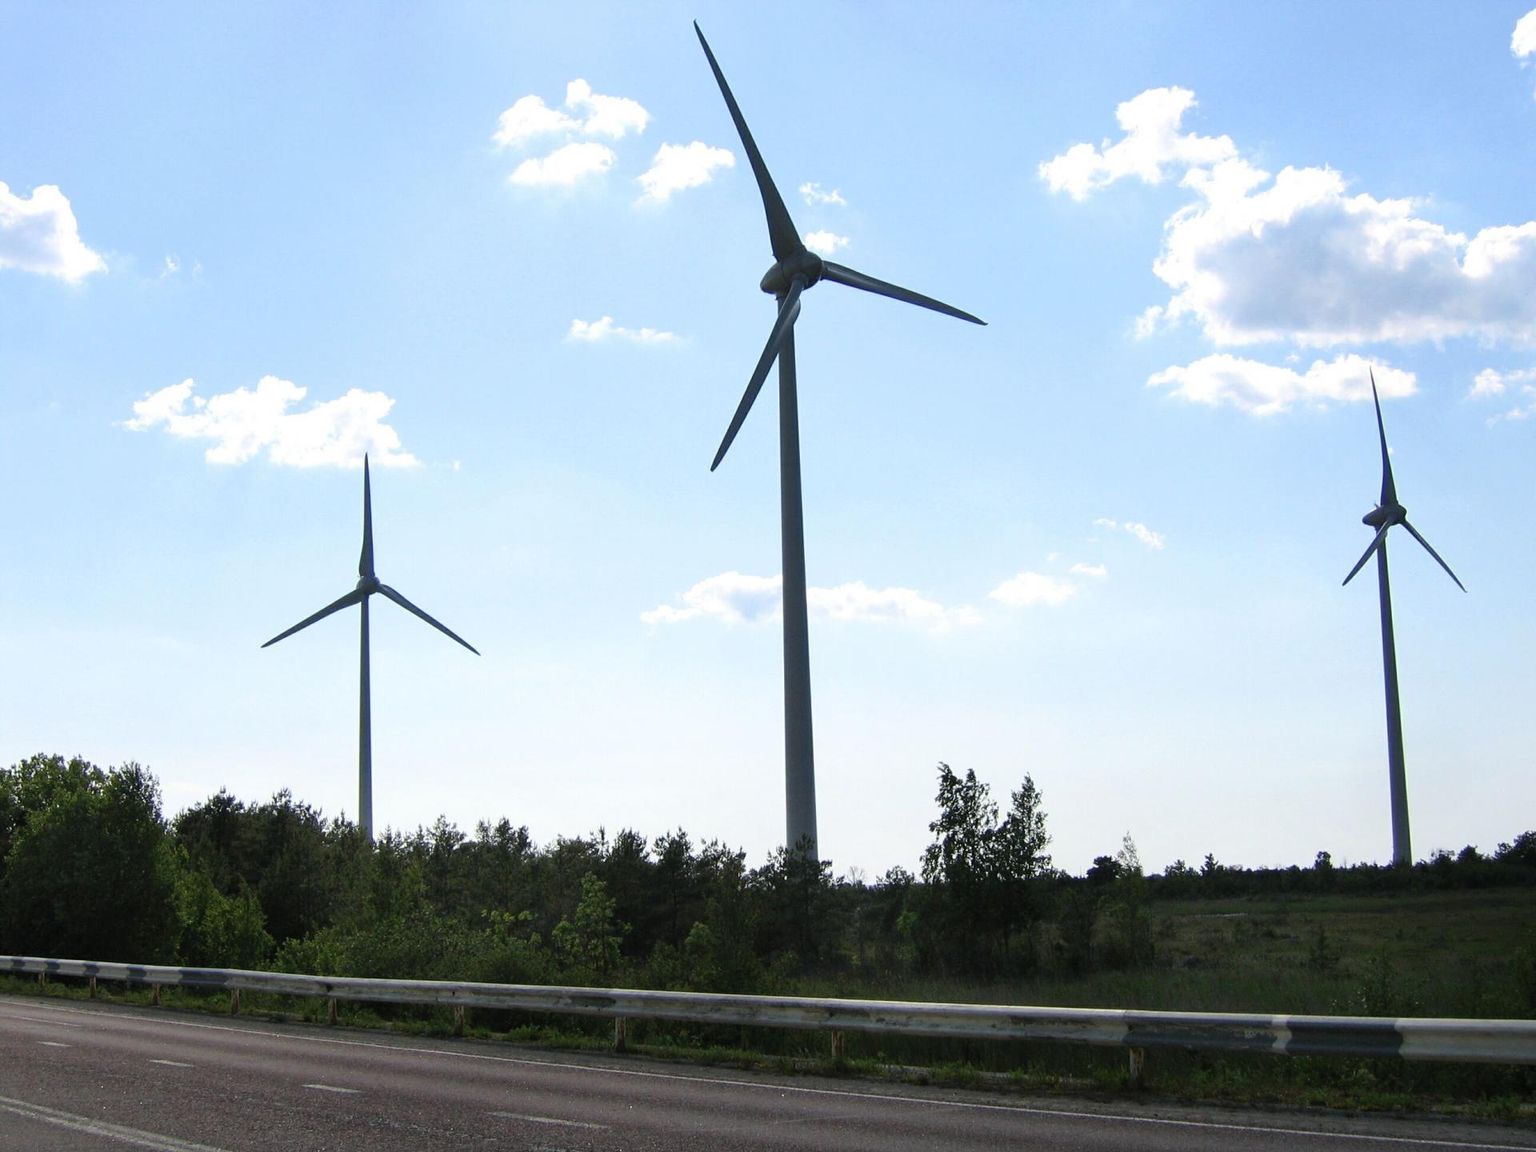 Tulevikus peaks tuuleenergia andma kolmandiku Eesti elektritootmisest. 